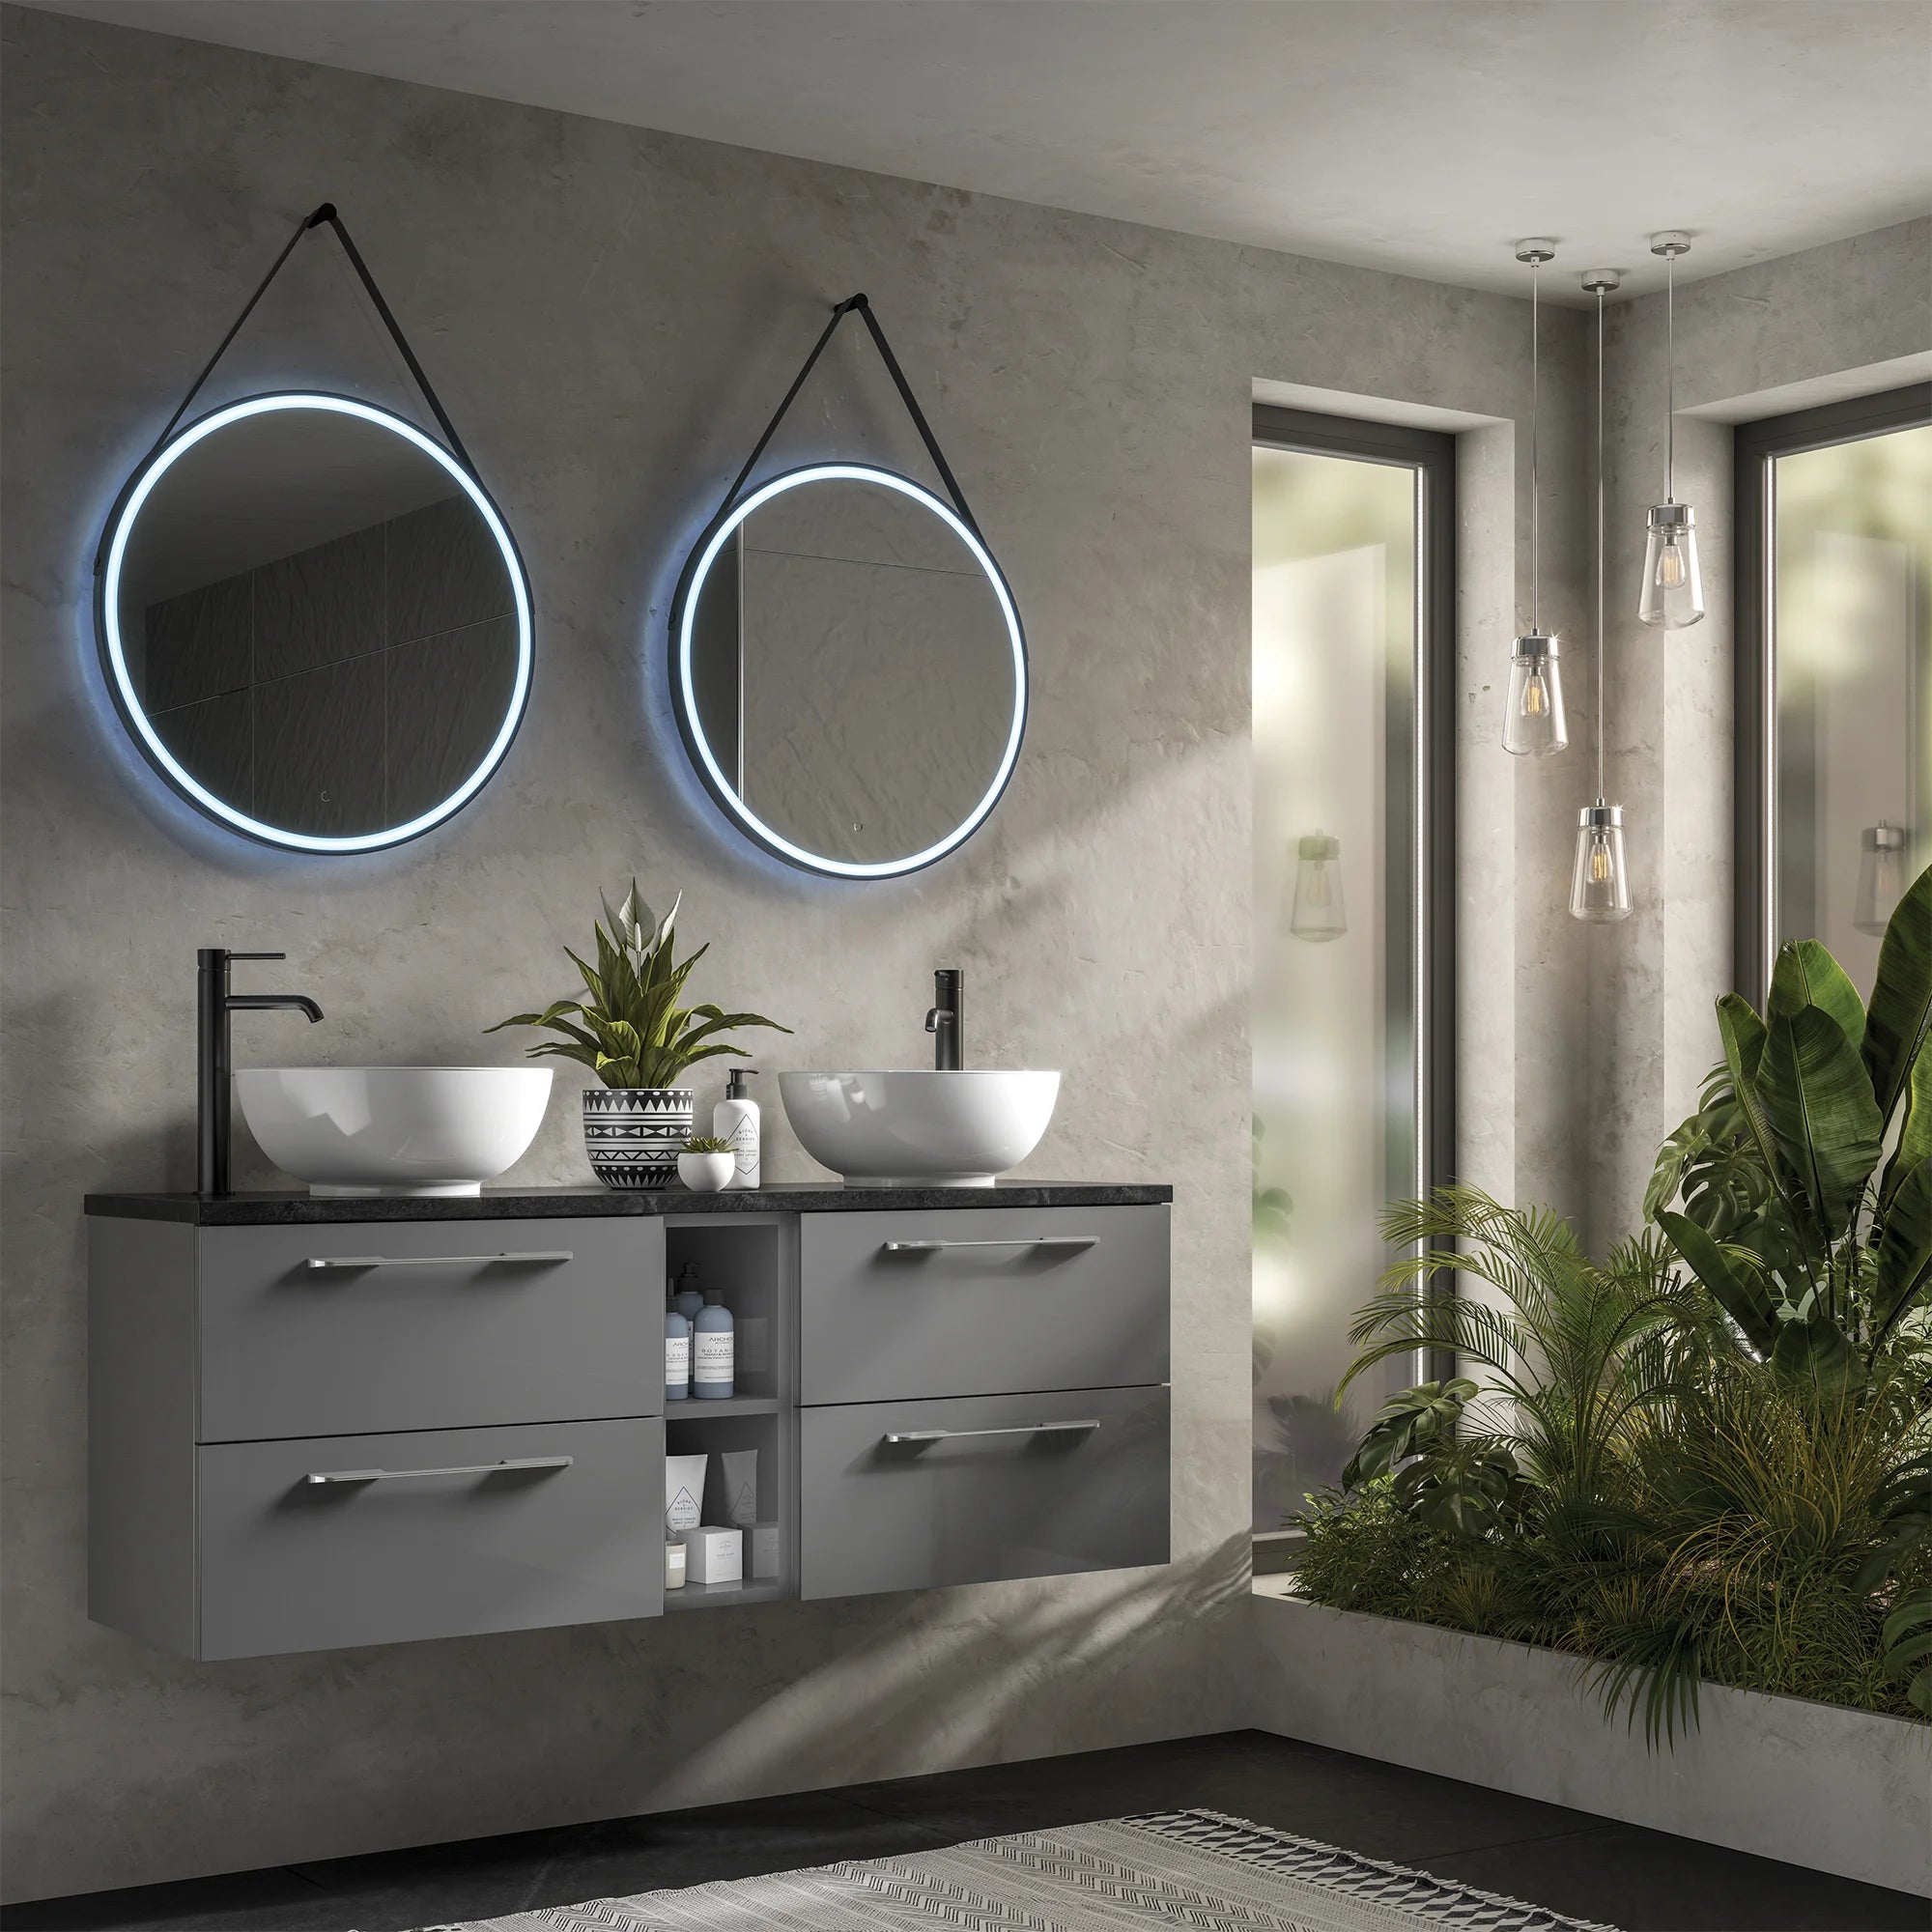 Solstice LED Illuminated Bathroom Mirror - Black